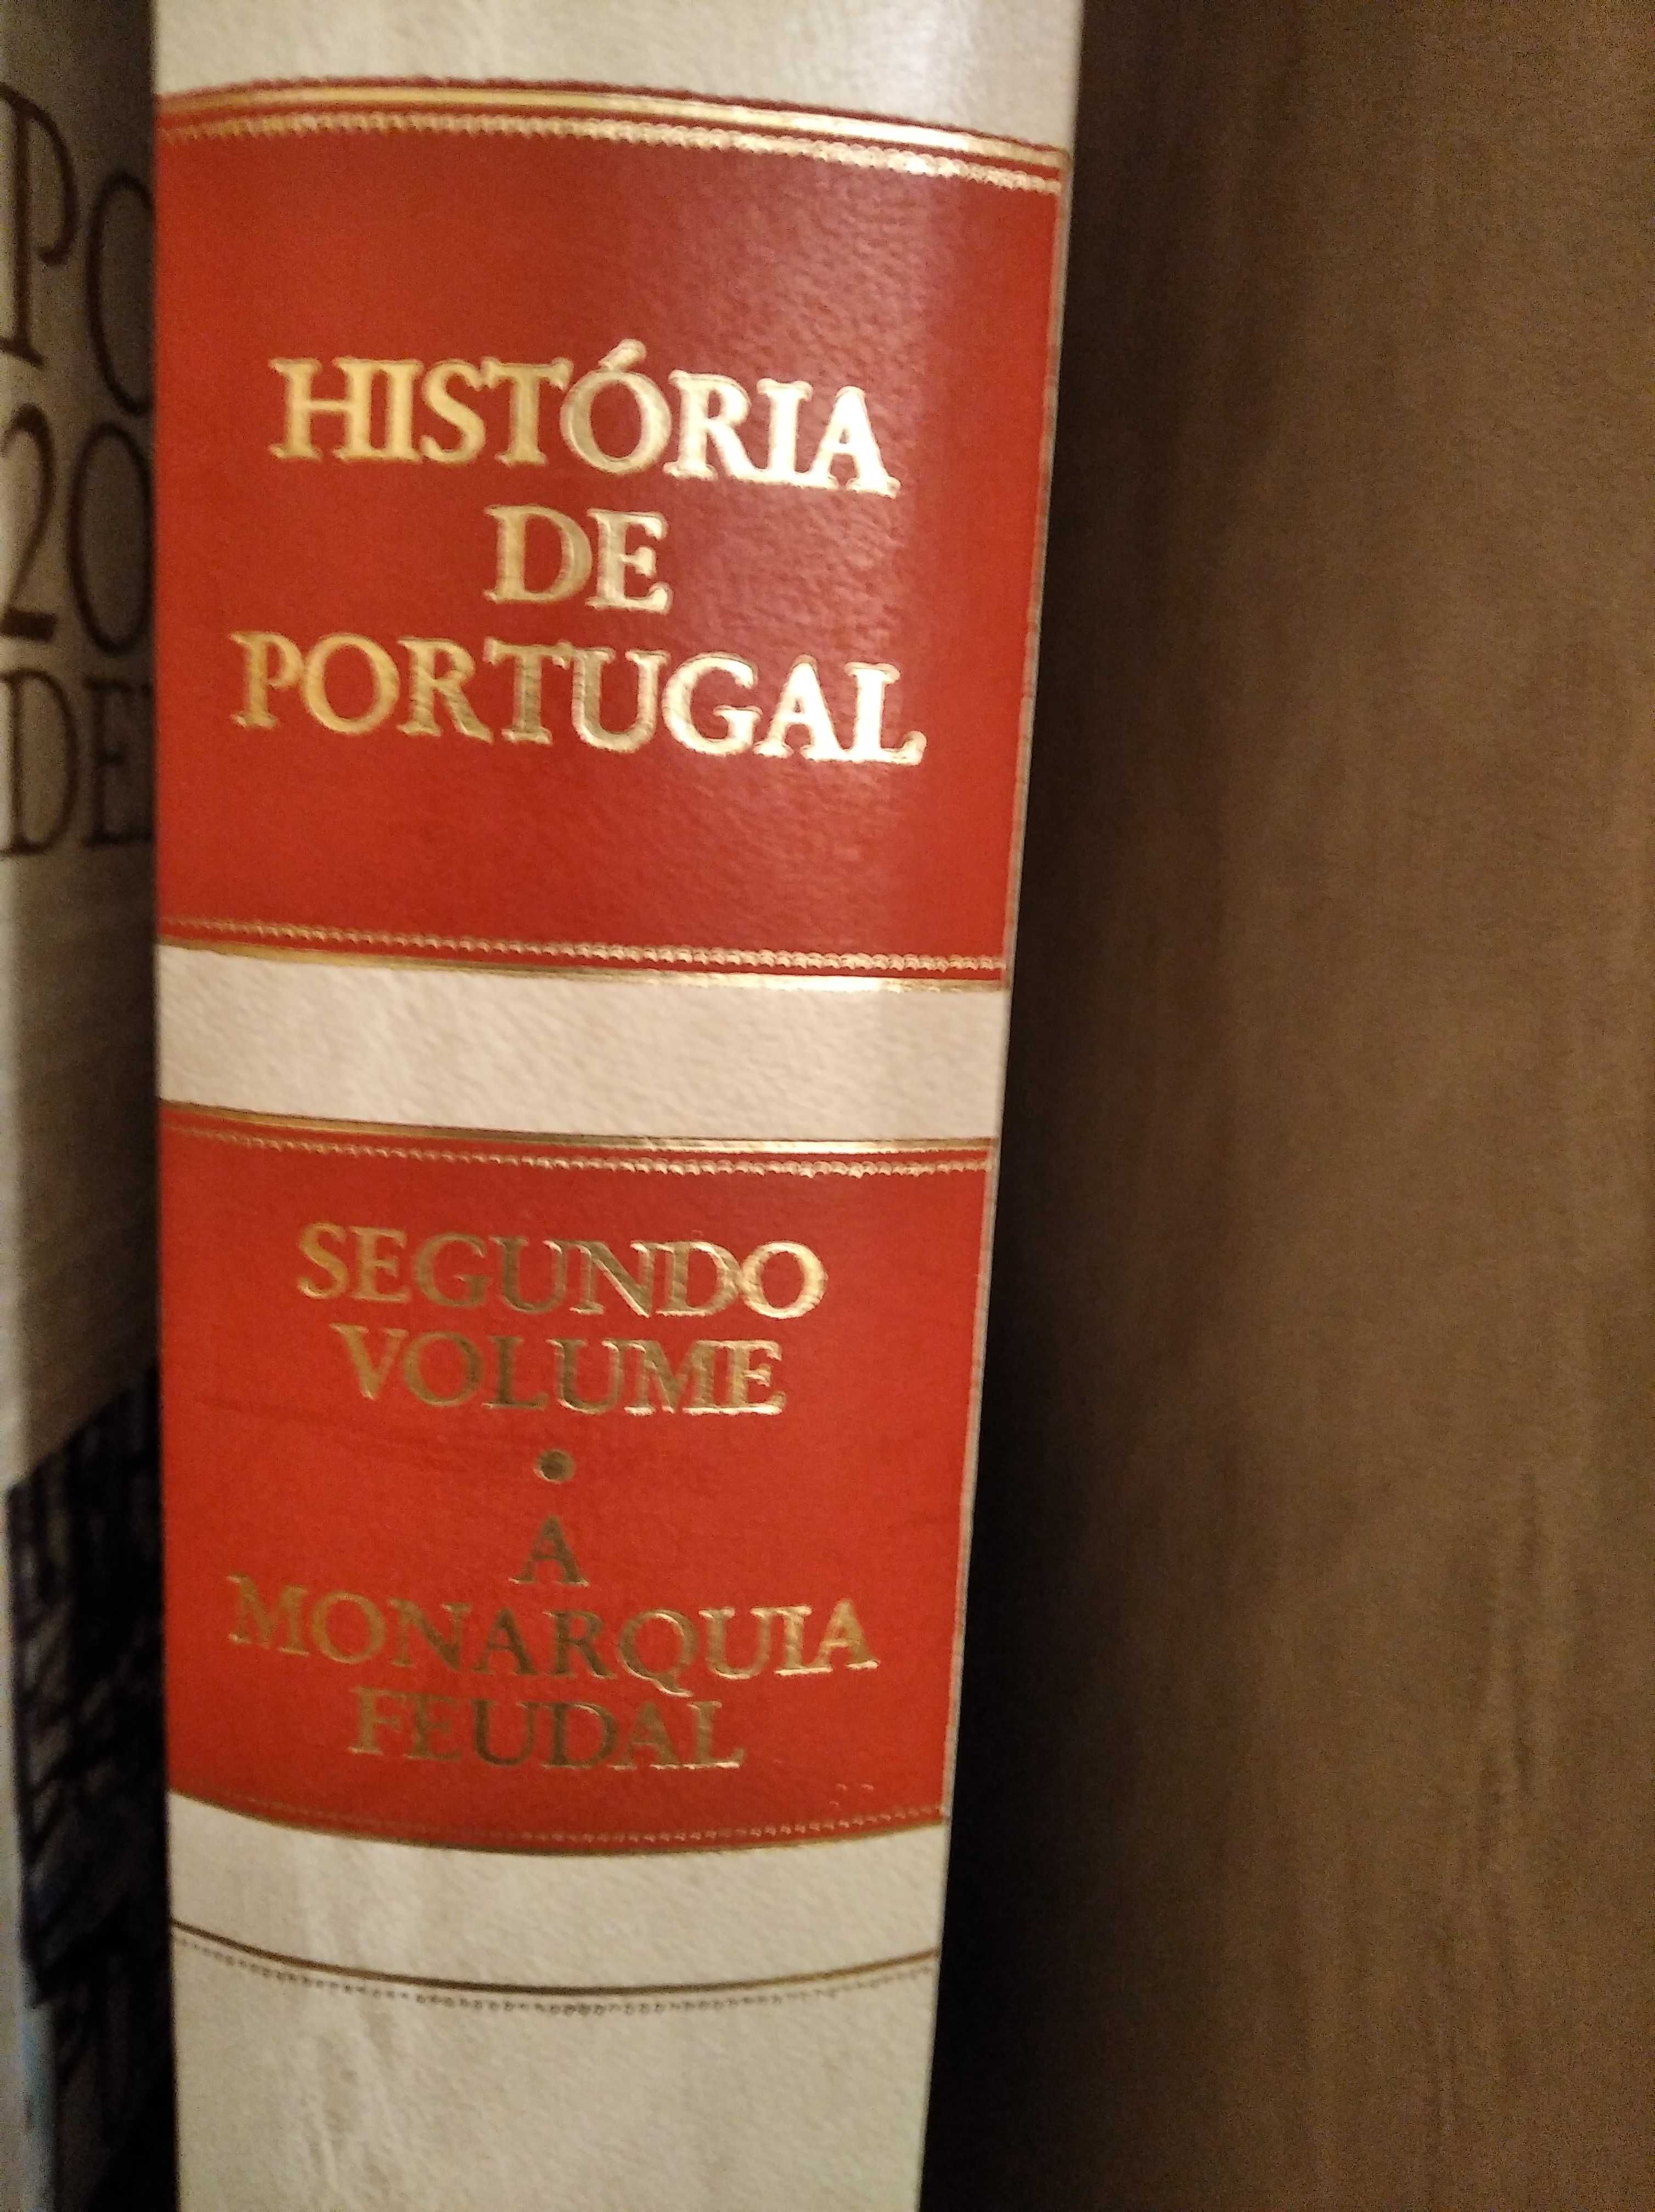 Coleção de 8 volumes de História de Portugal, uma coleção lindíssima